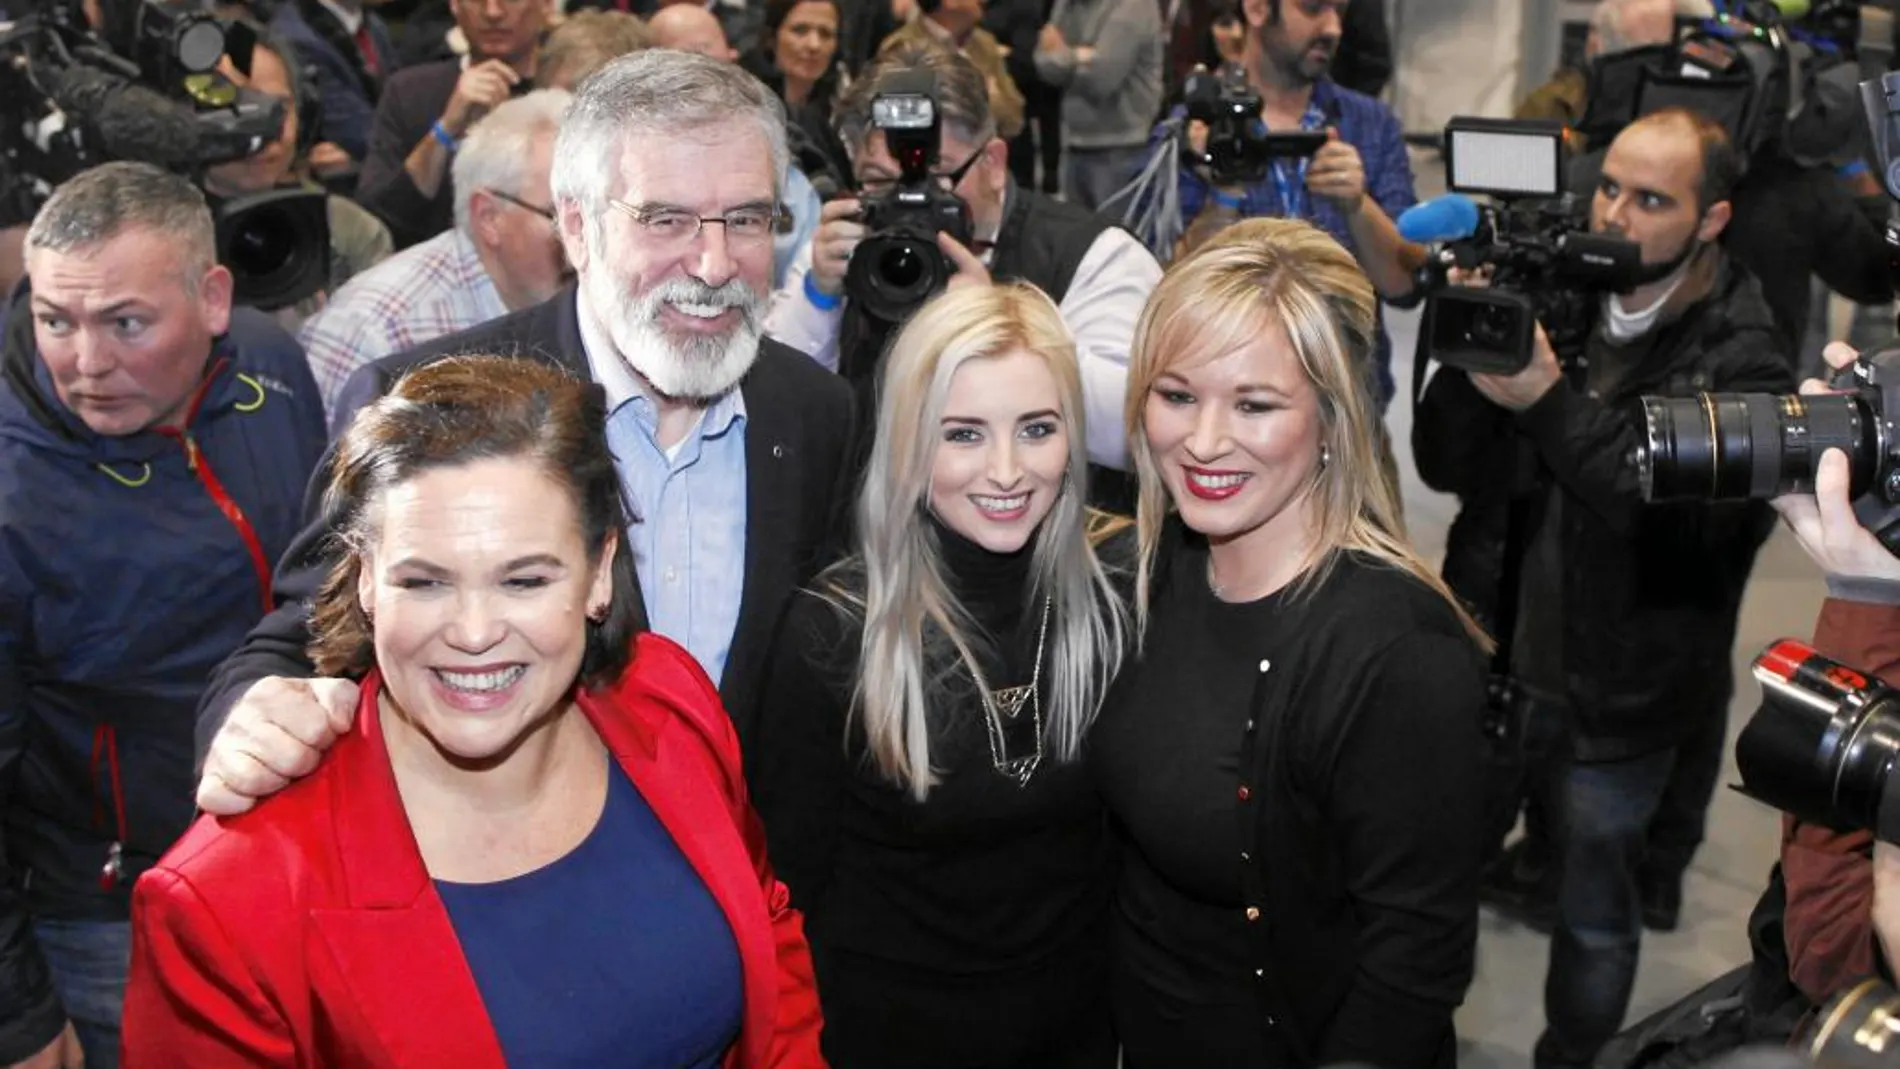 Michelle O’Neill (derecha) apoyada por otros dirigentes del Sinn Féin, entre ellos Gerry Adams, tras las elecciones